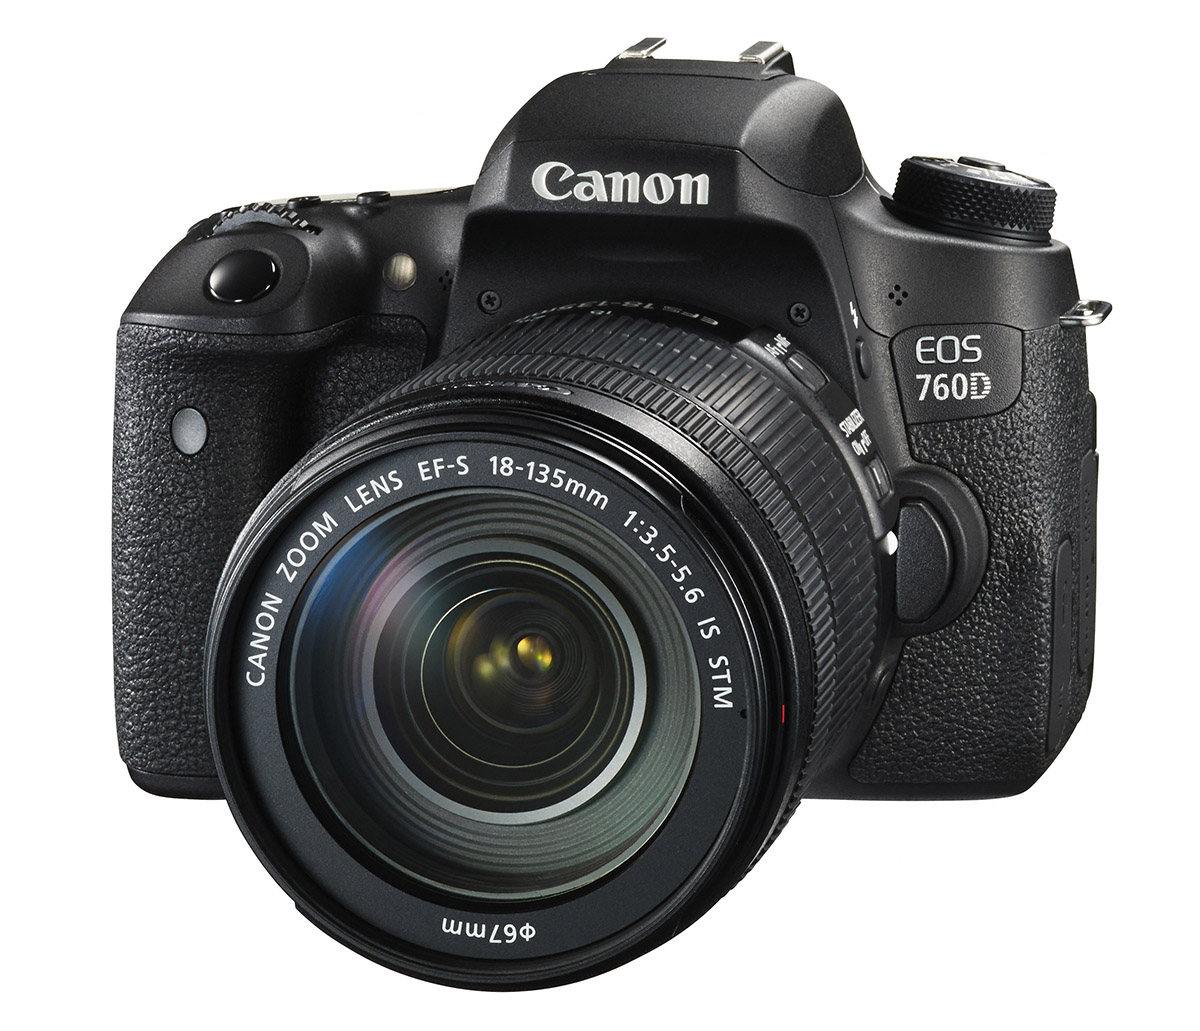 På ferien i år havde jeg medtaget to kameraer - Canon 760d